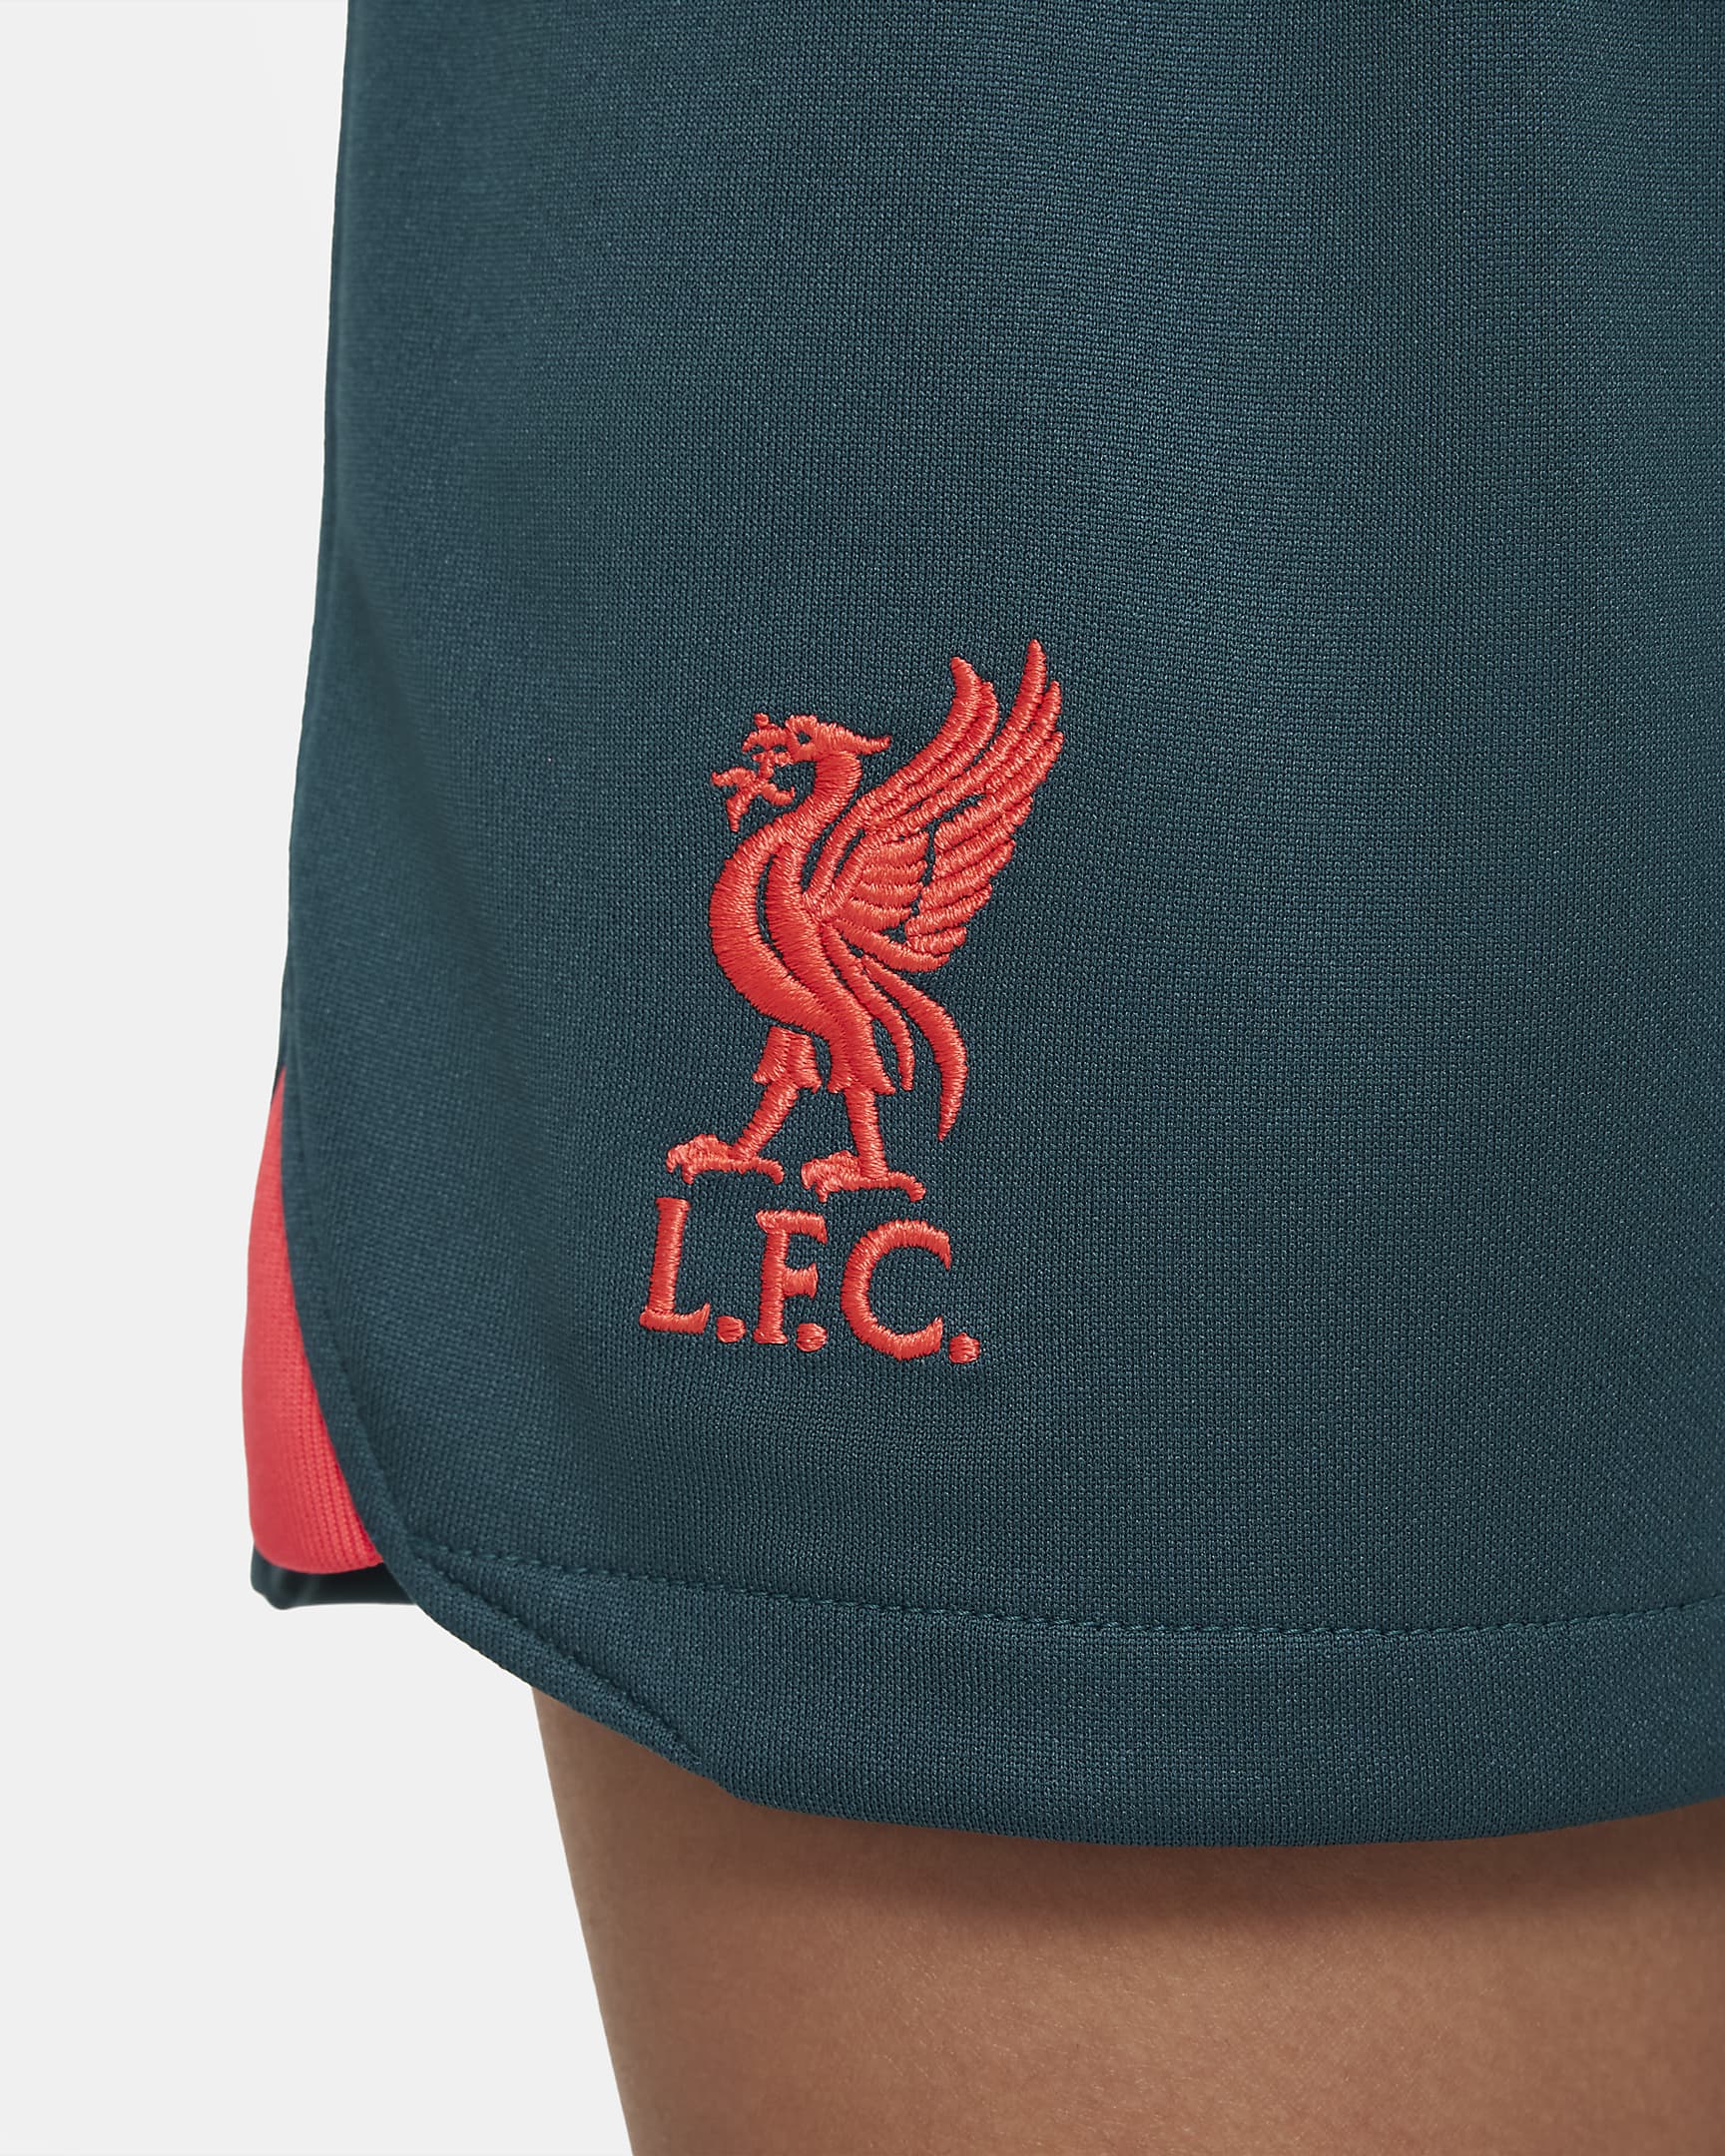 Liverpool F.C. 2022/23 Third Younger Kids' Nike Football Kit. Nike UK